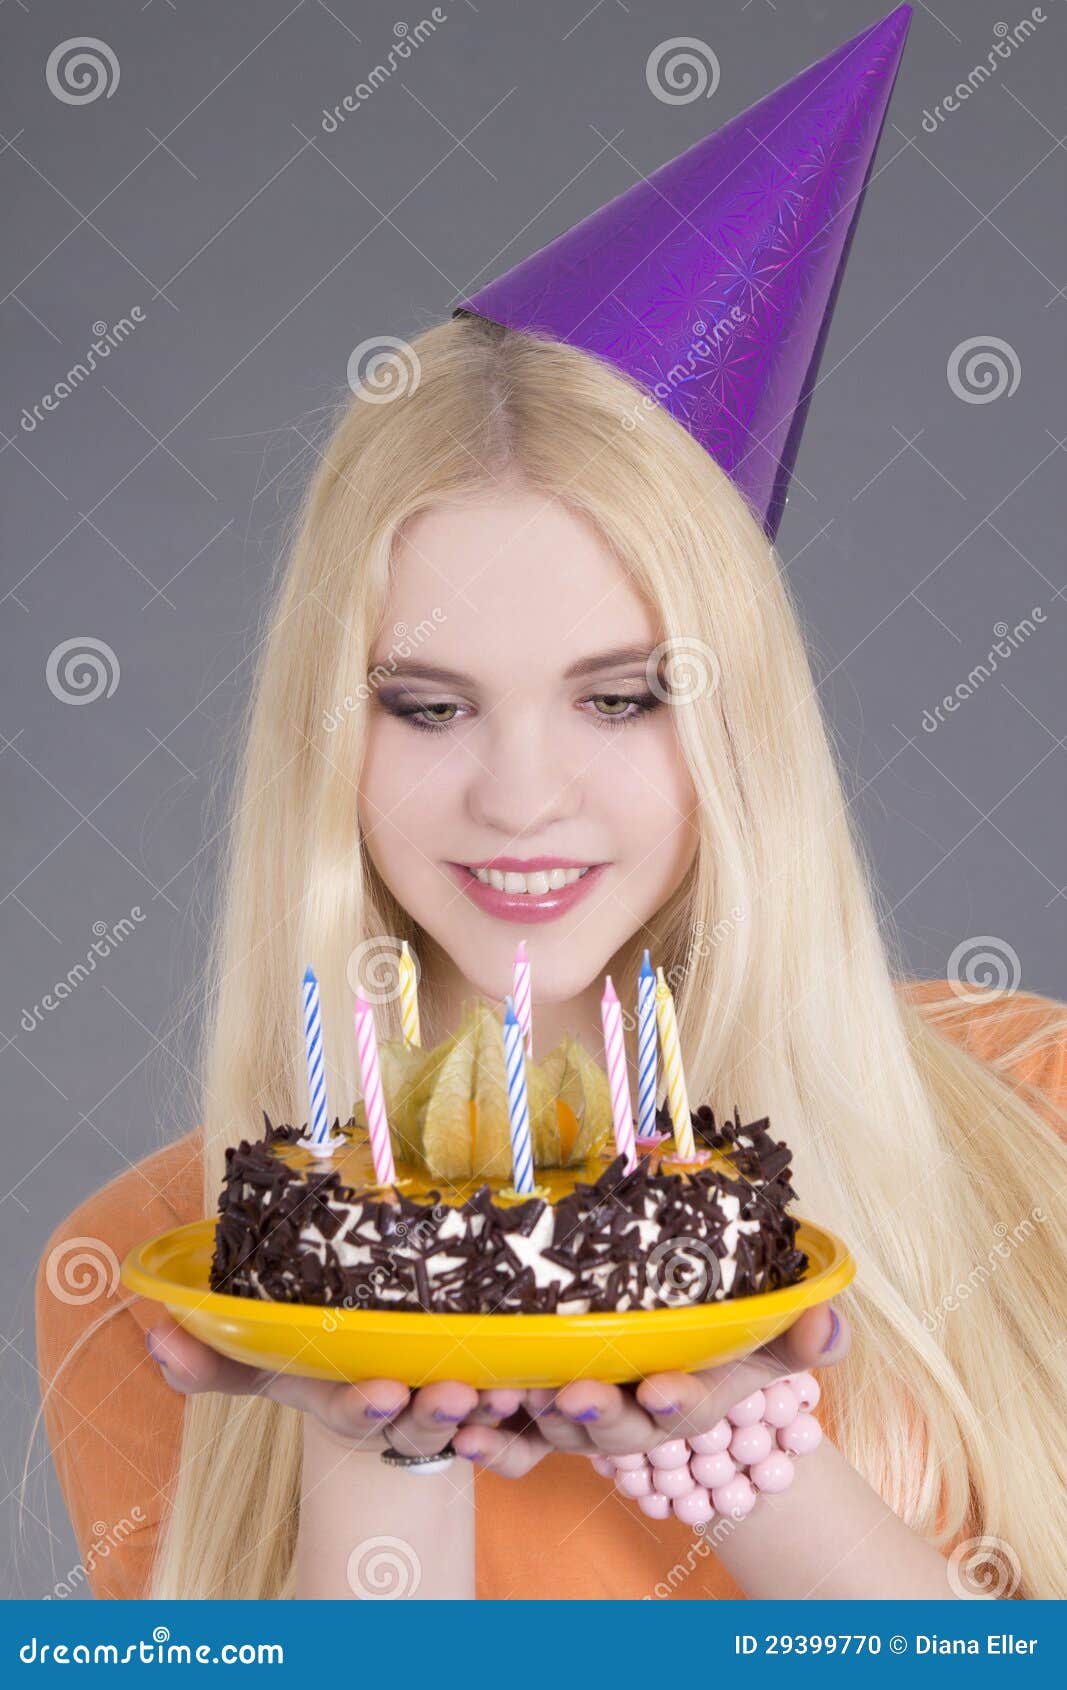 Mulher séria e enrugada comemora poses de aniversário com bolo vestida com  roupa estilosa com maquiagem brilhante recebe parabéns